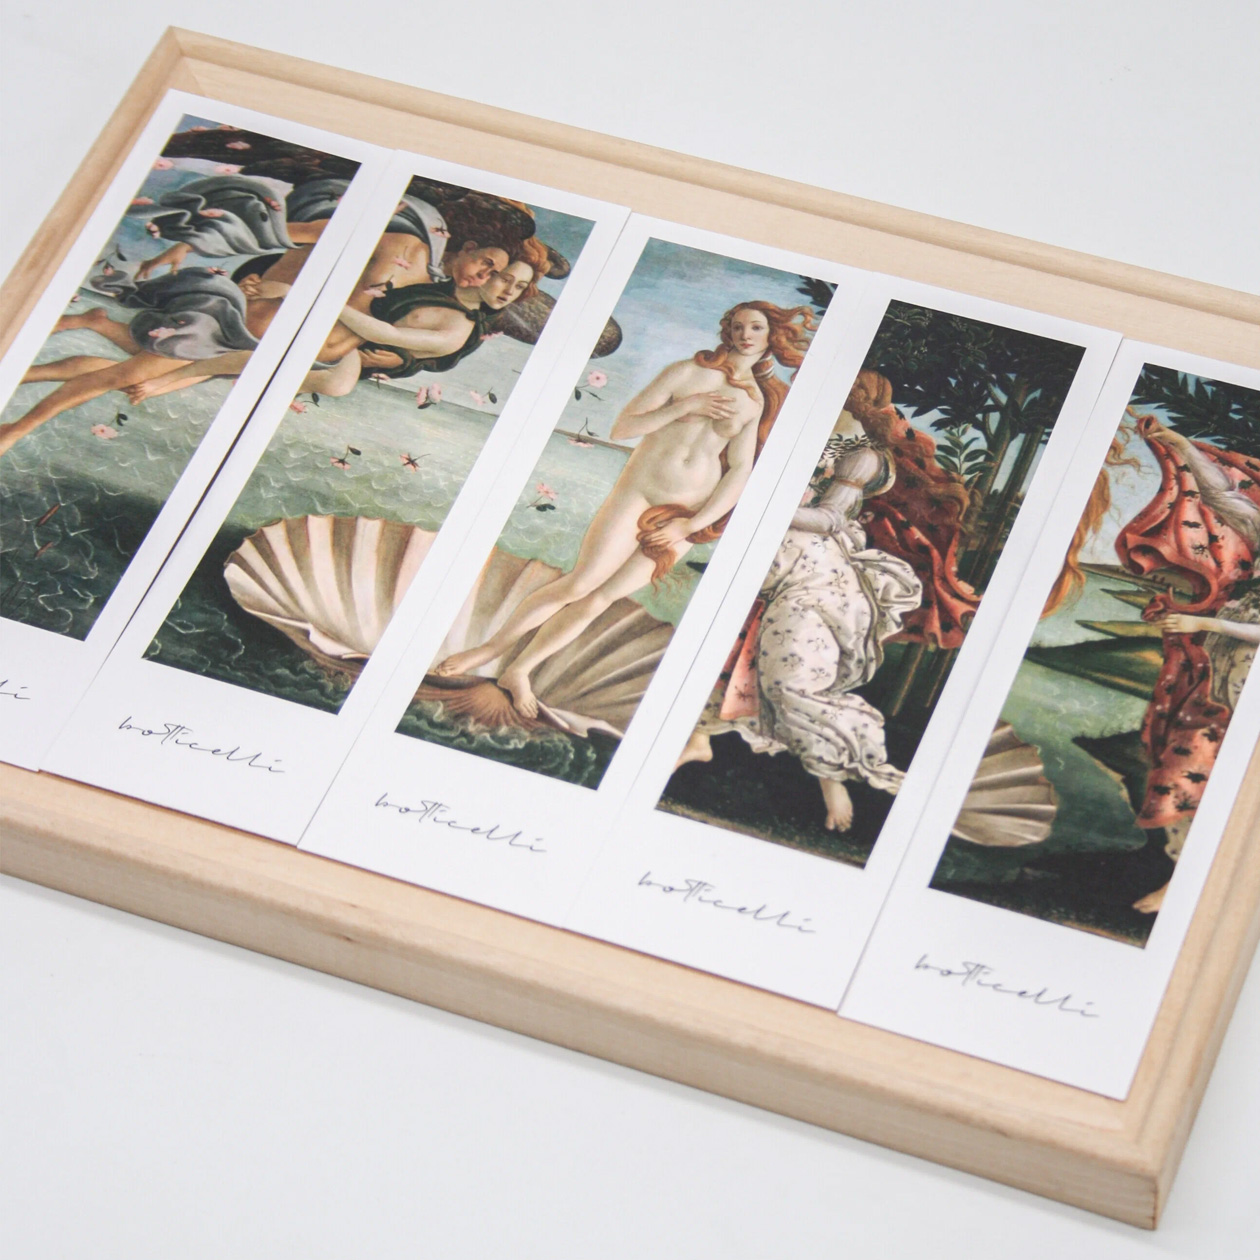 Закладки с картиной «Рождение Венеры». Купить можно на «Вайлдберриз» за 180 ₽ — у продавца есть и другие варианты